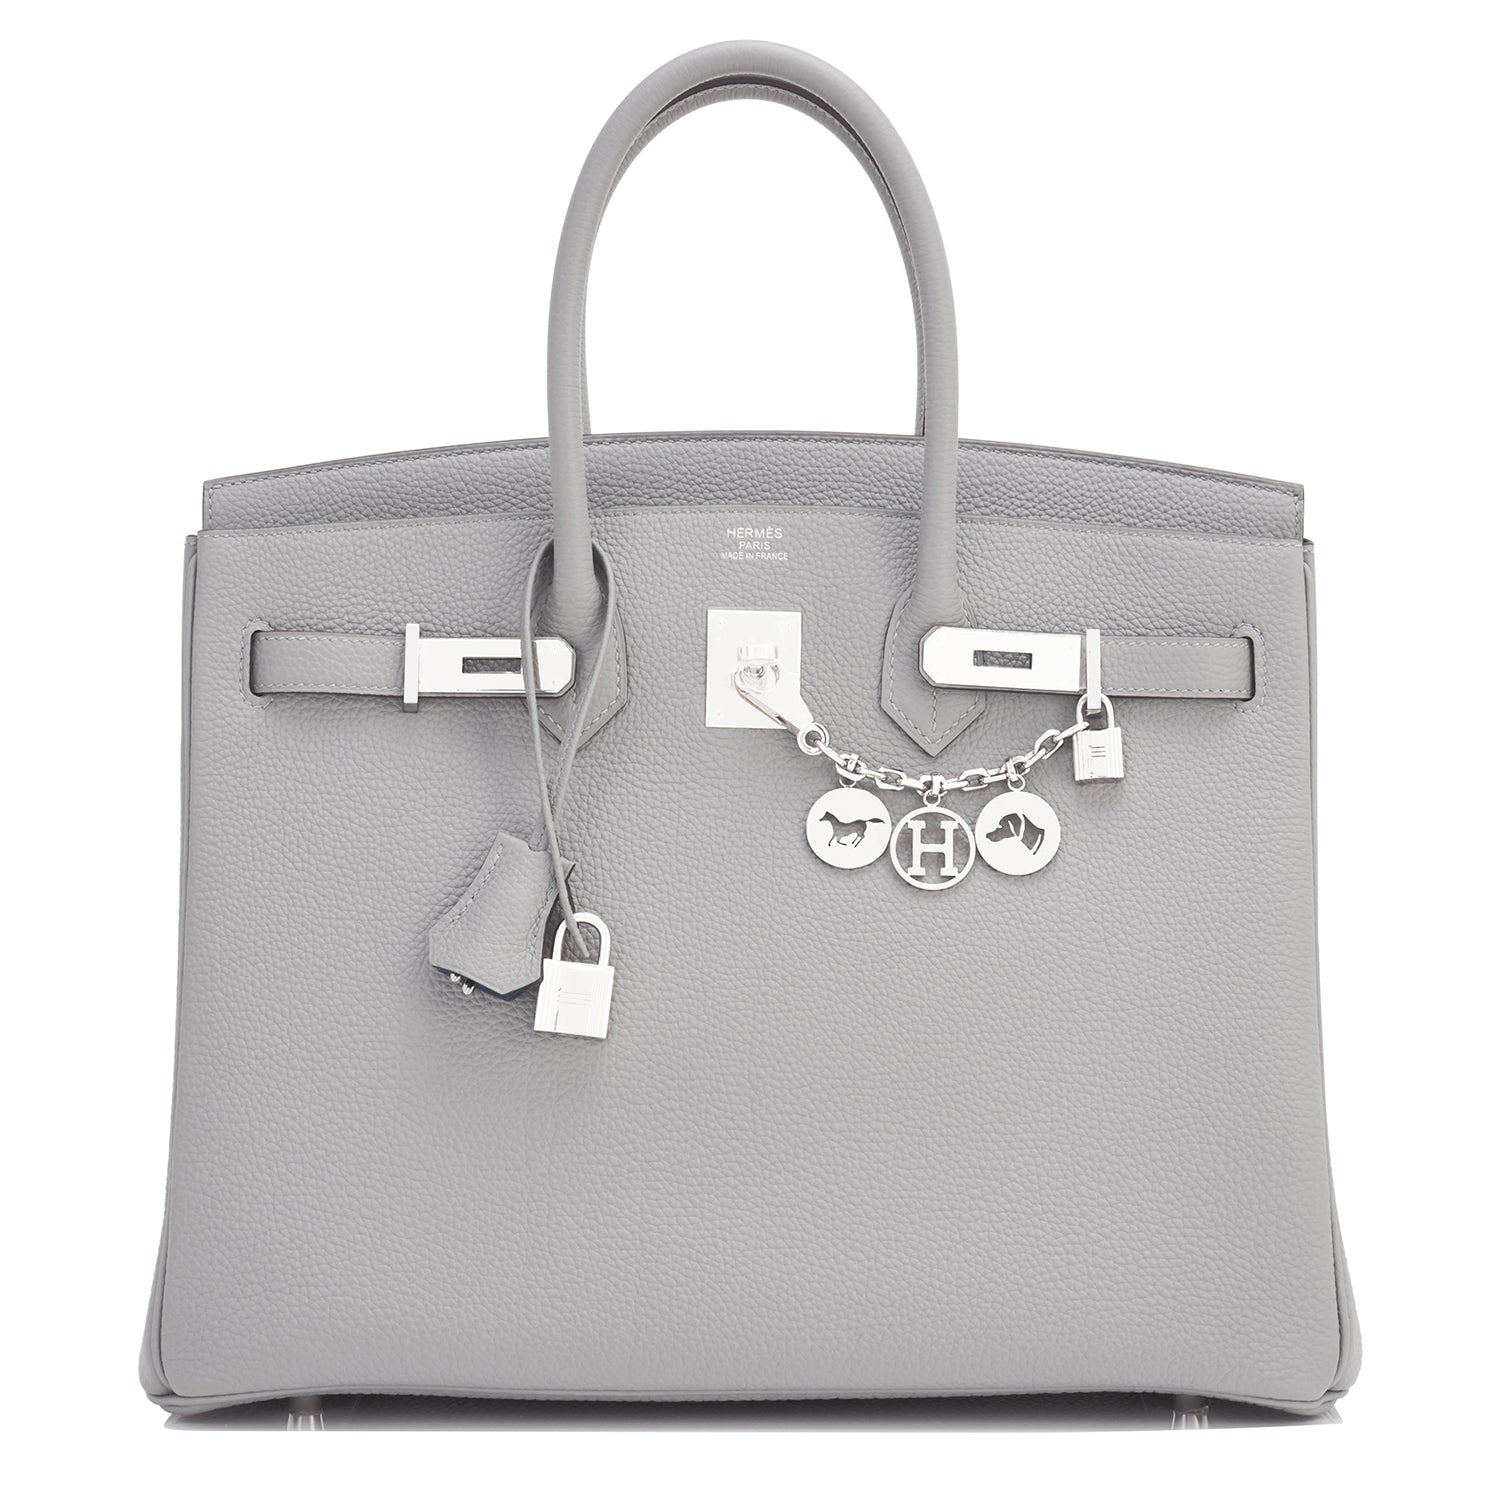 Hermes Birkin bag 25 Gris mouette Togo leather Silver hardware